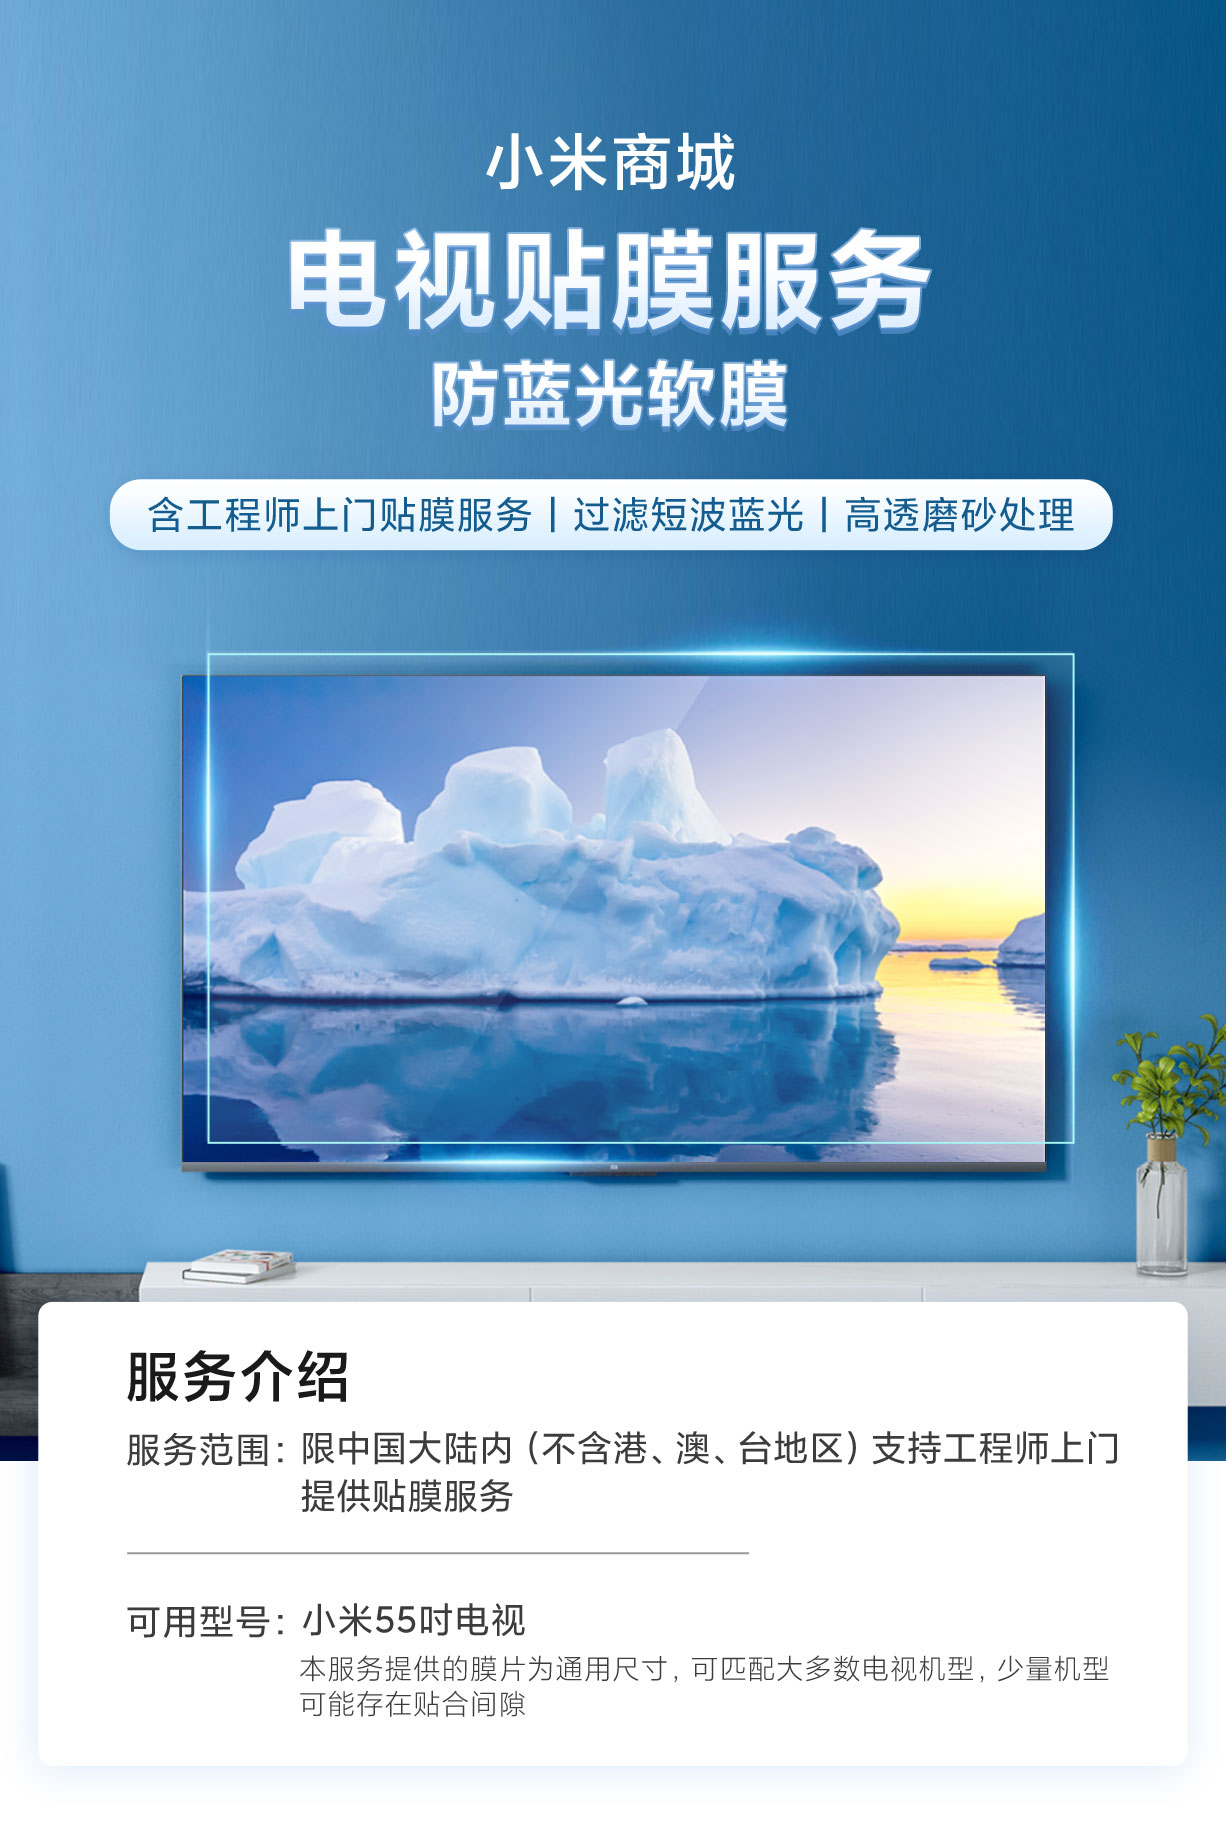 小米推出299元防蓝光电视贴膜服务